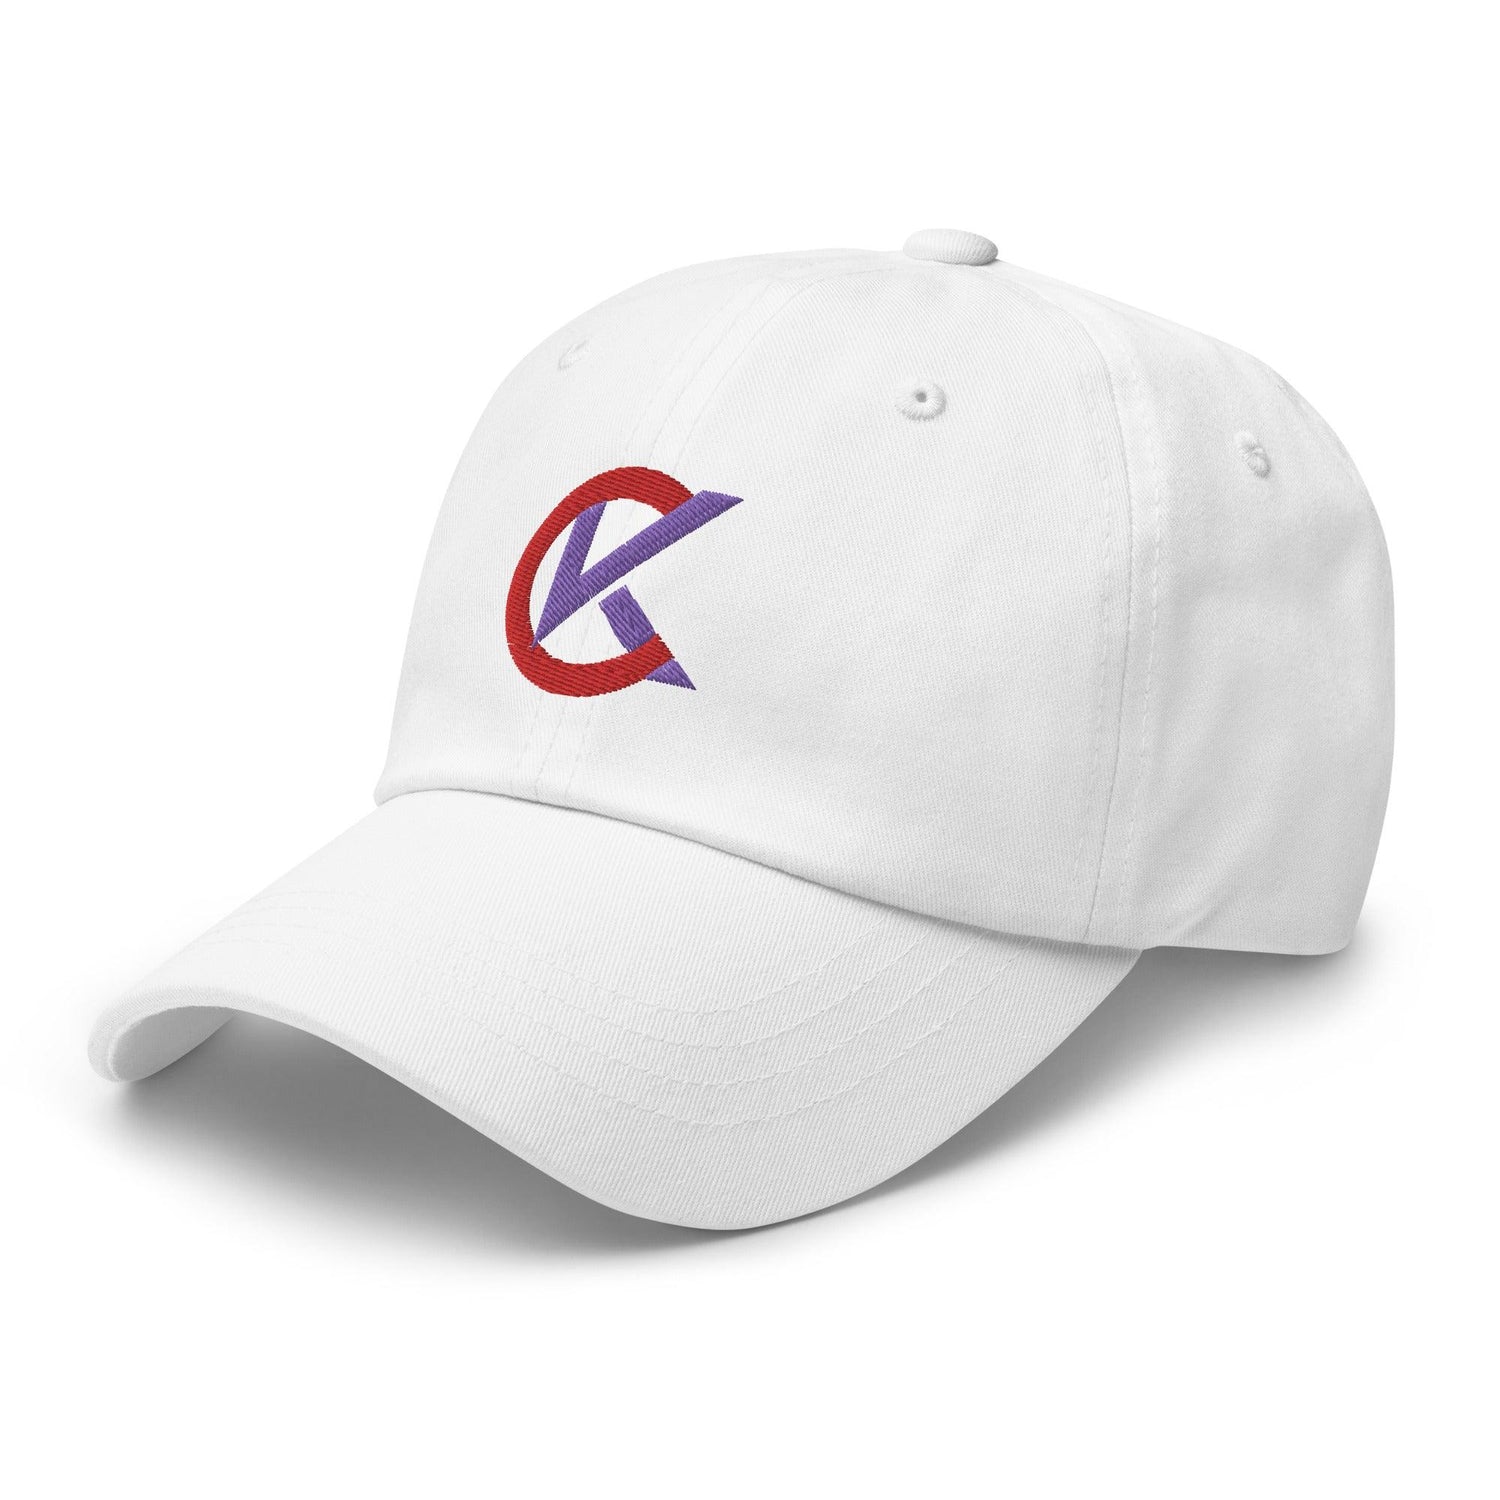 Cooper Kinney "Elite" hat - Fan Arch